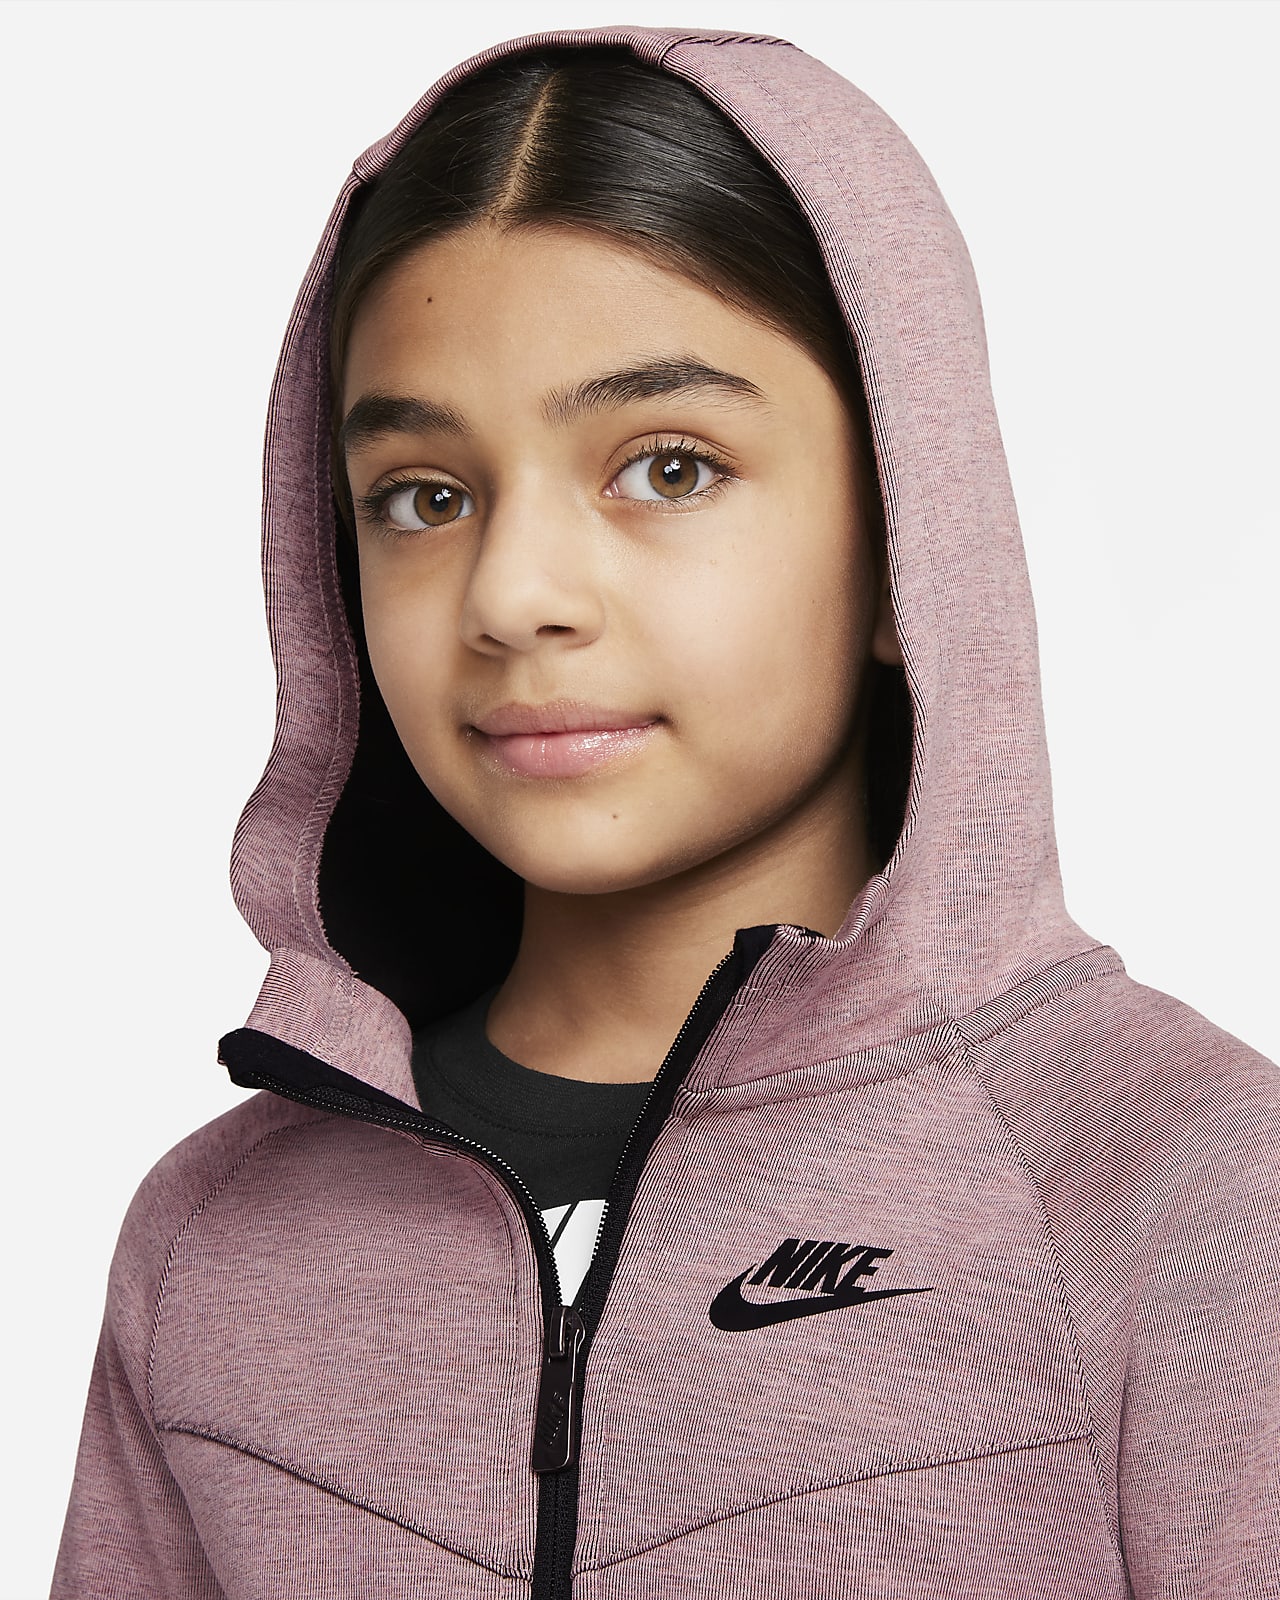 Kids' Nike Sportswear Tech Fleece Full Zip Hoodie